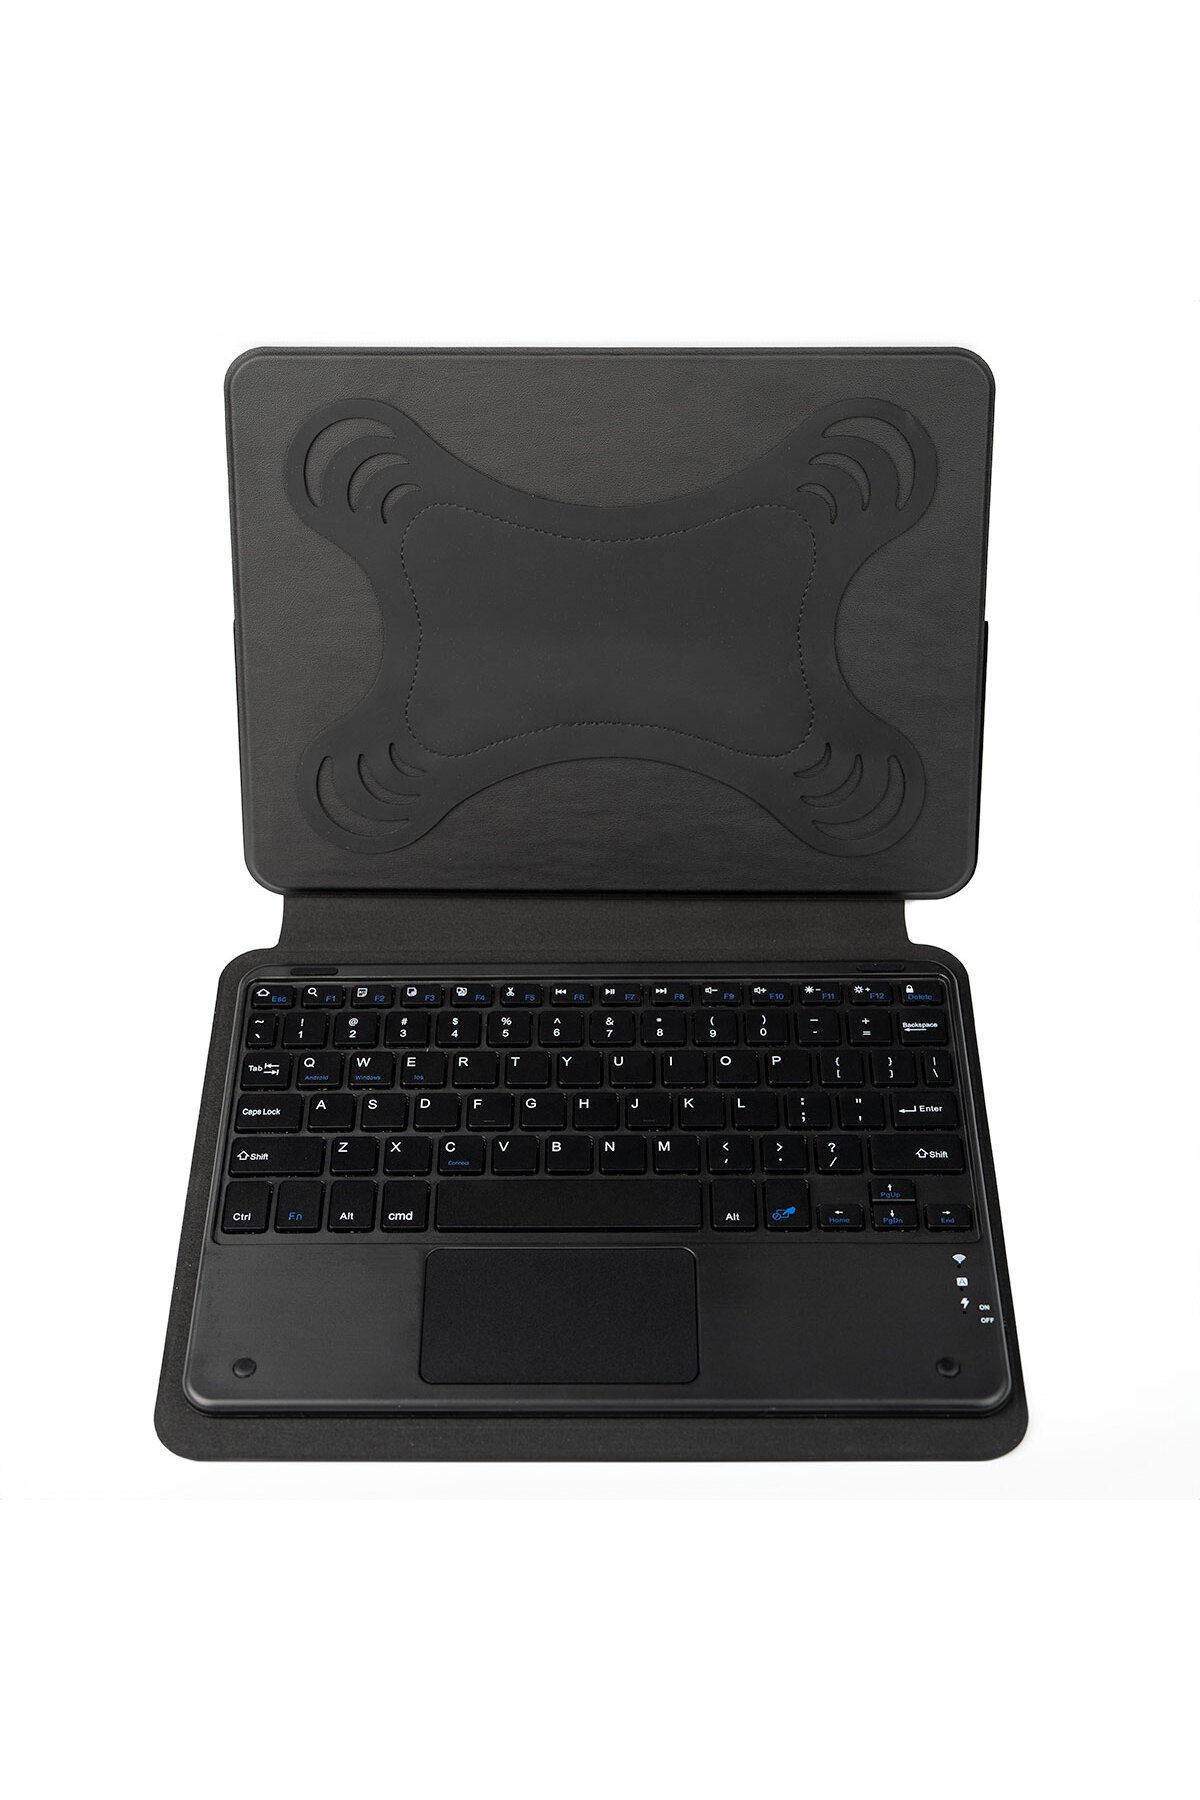 Nezih Case 8 inç Tüm Tabletlere Uyumlu Universal Bluetooh Bağlantılı Standlı Klavyeli Tablet Kılıfı